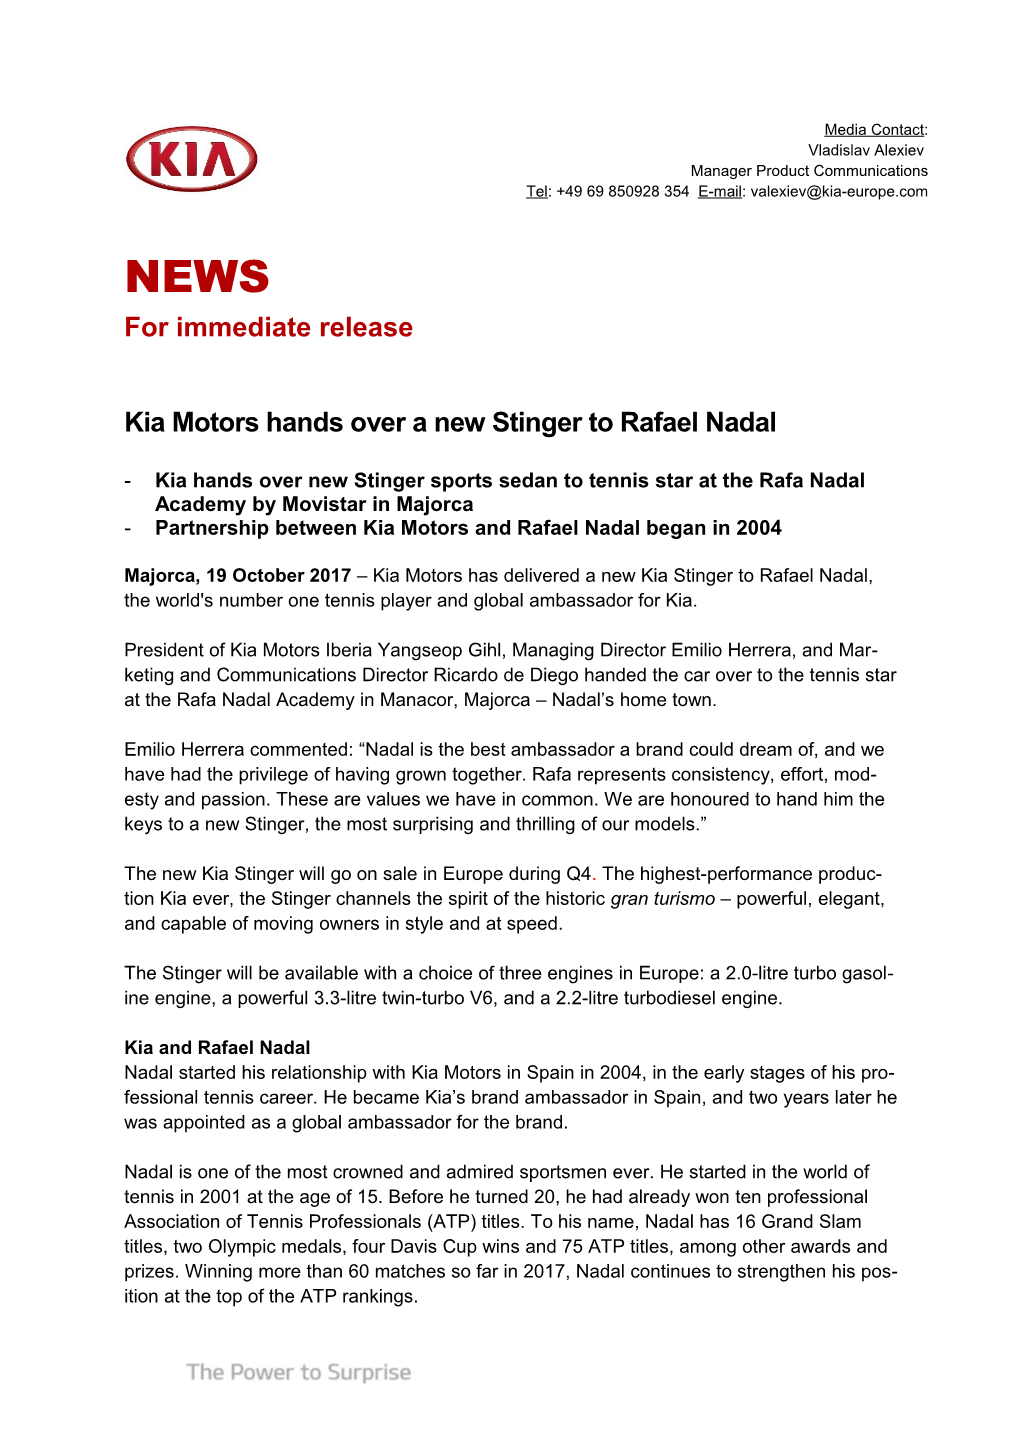 Partnership Between Kia Motors and Rafael Nadal Began in 2004